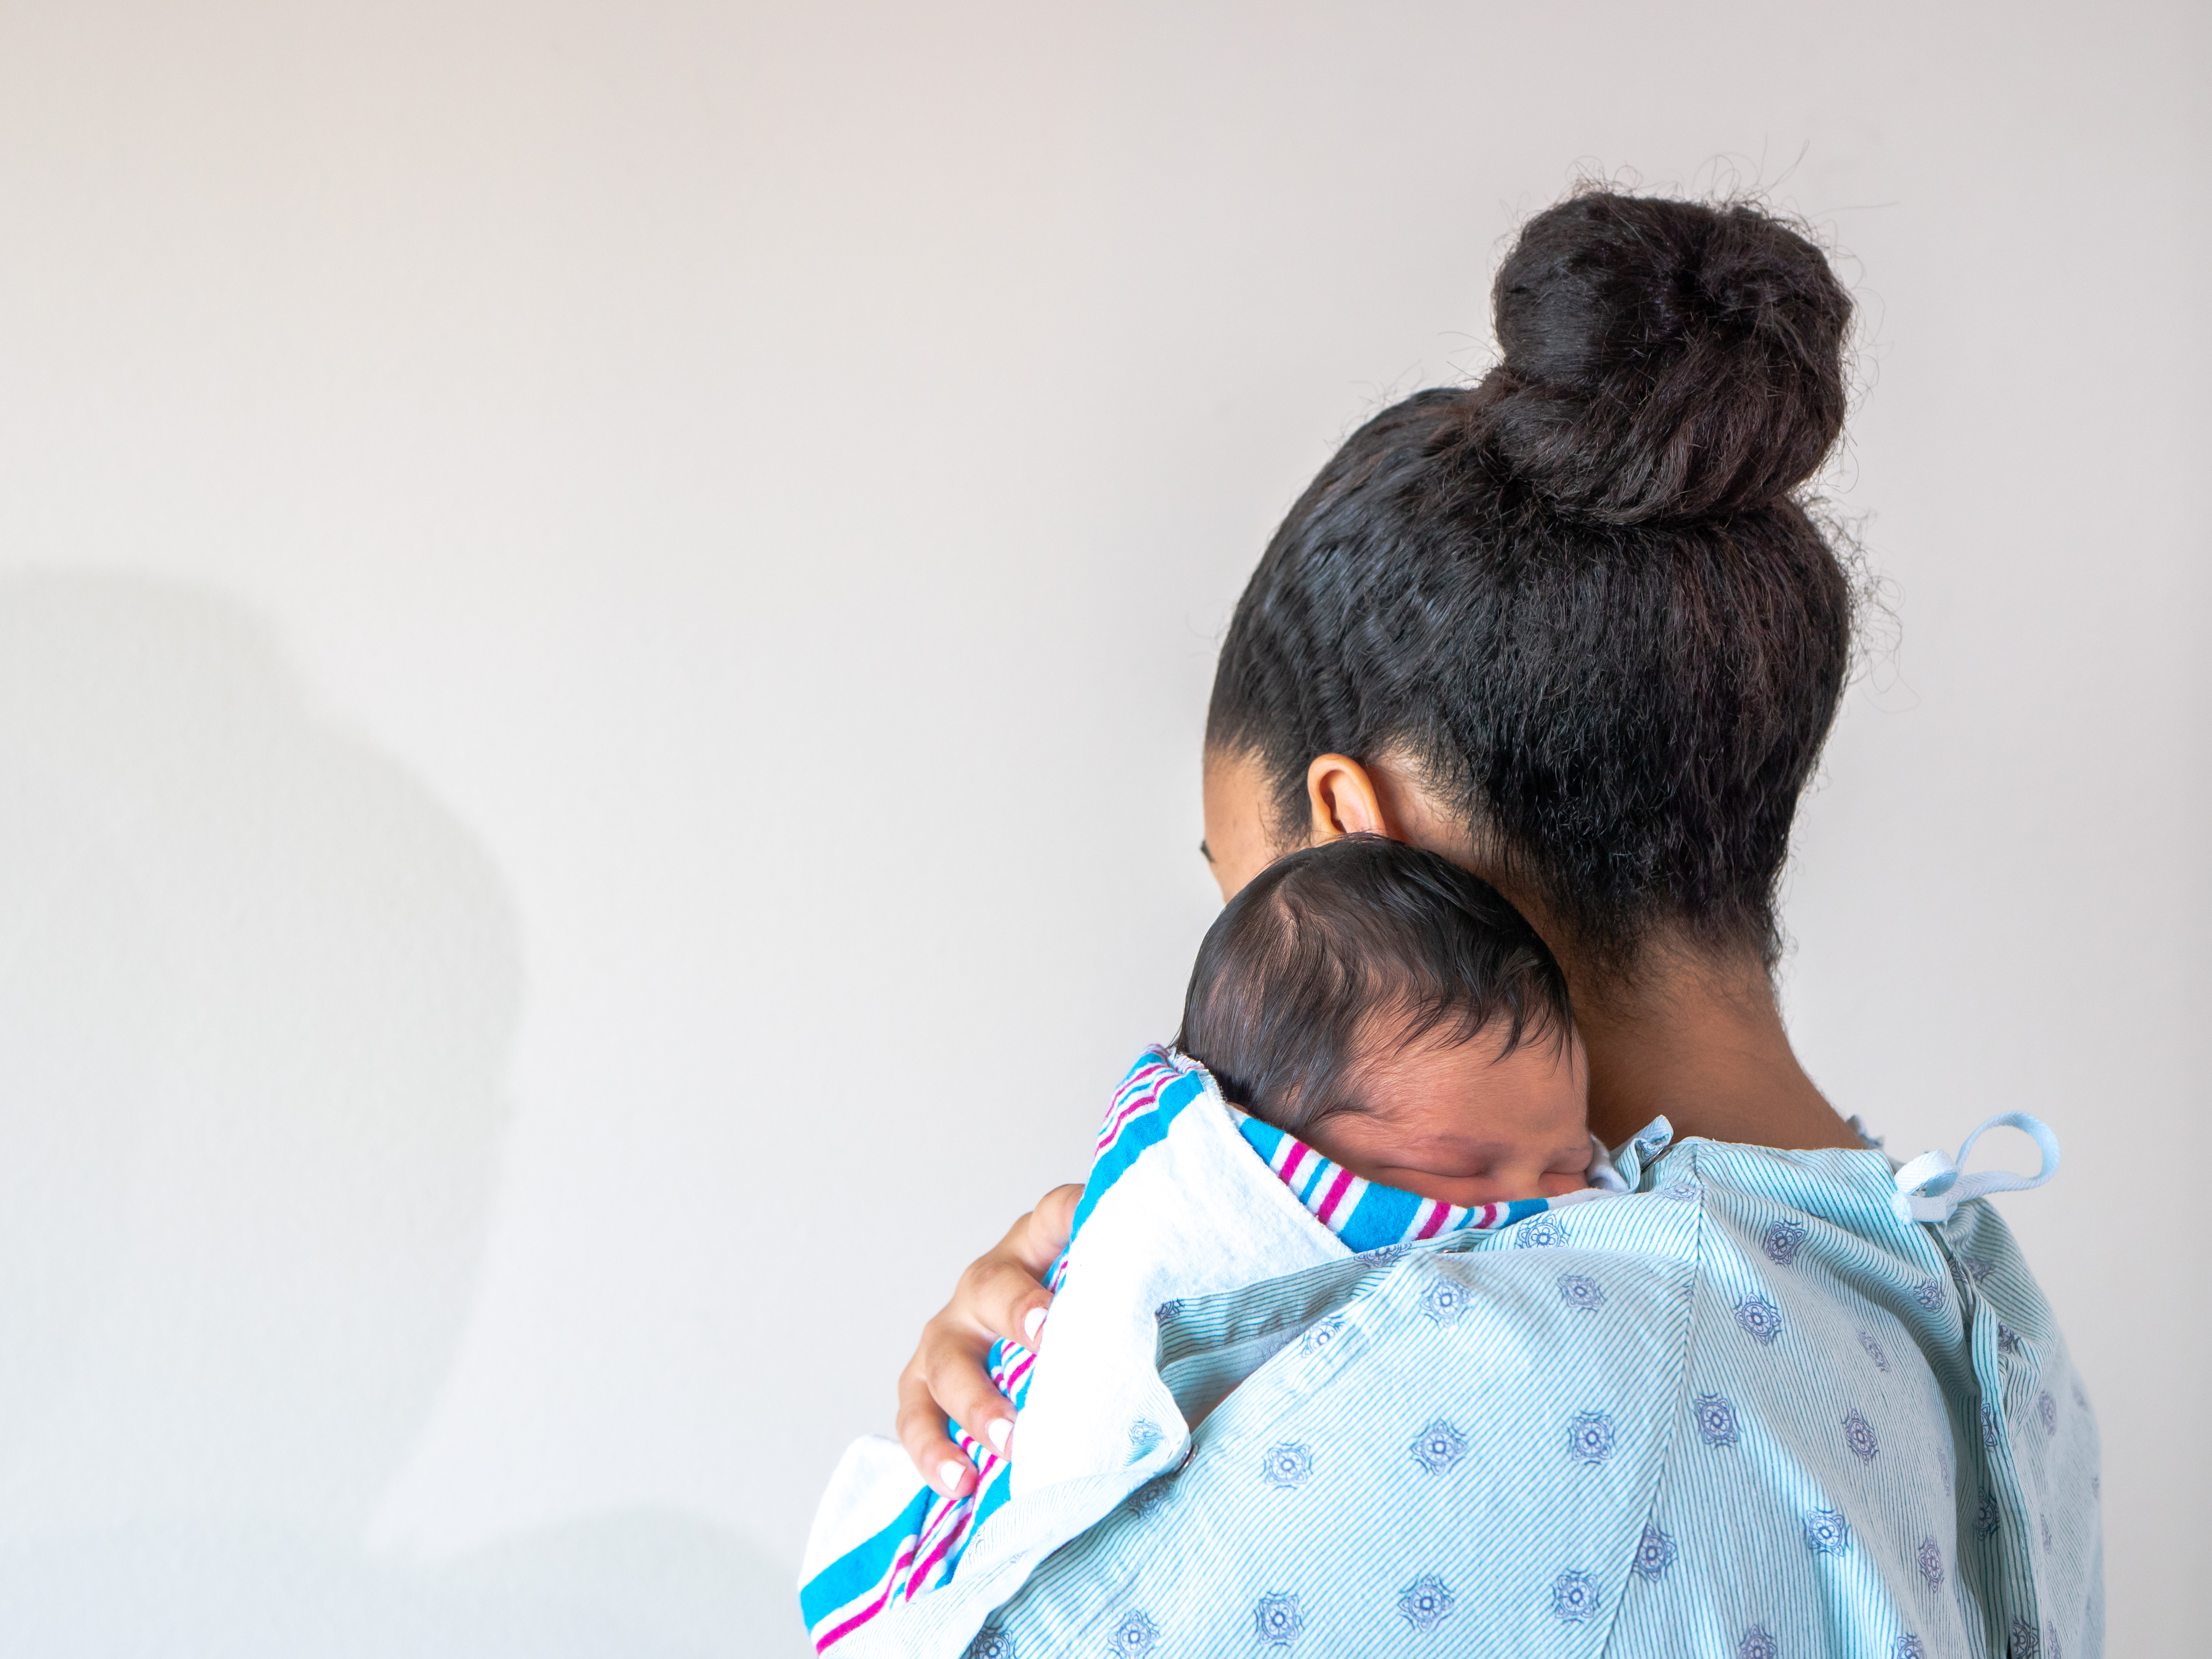 Eine frischgebackene Mutter im Krankenhaus mit ihrem neugeborenen Baby | Quelle: Shutterstock